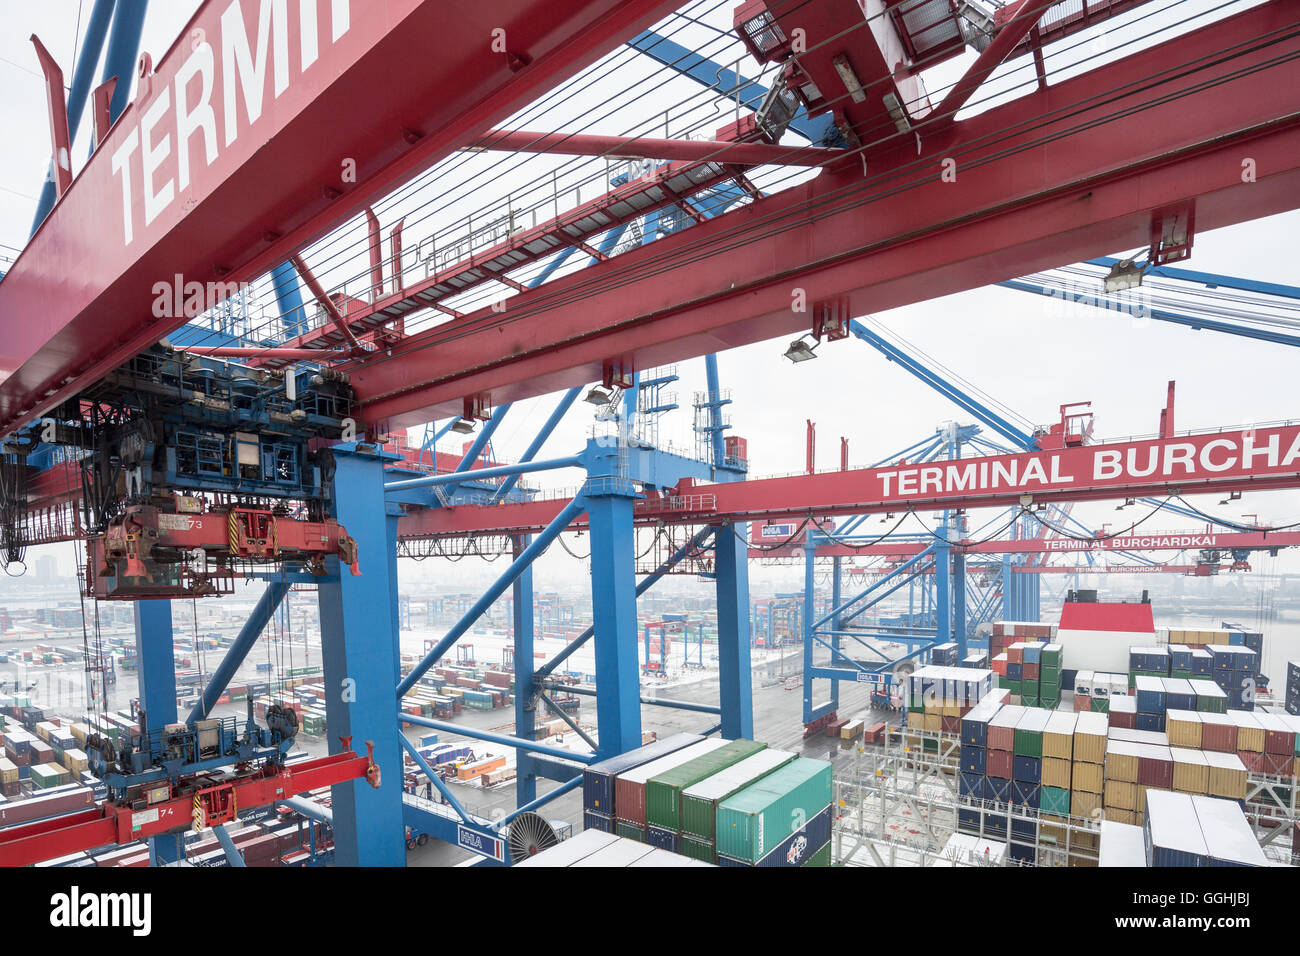 Le chargement et le déchargement du navire porte-conteneurs CMA CGM Marco Polo dans le Container Terminal Burchardkai à Hambourg, Allemagne Banque D'Images